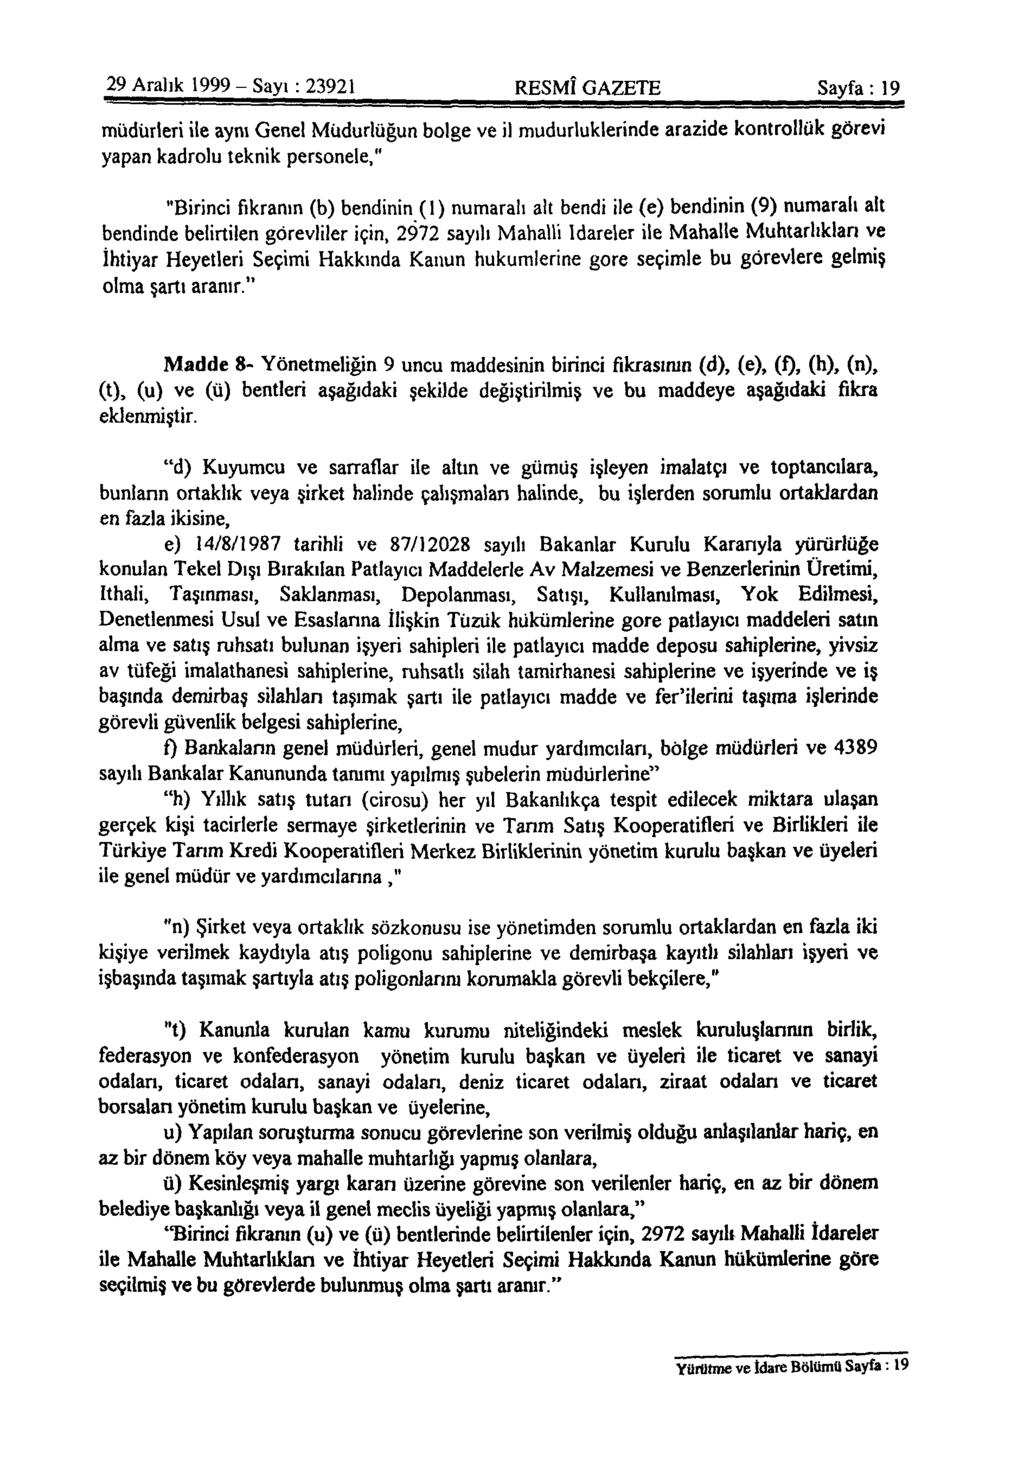 29 Aralık 1999 - Sayı: 23921 RESMÎ GAZETE Sayfa: 19 müdürleri ile aynı Genel Müdürlüğün bölge ve il müdürlüklerinde arazide kontrollük görevi yapan kadrolu teknik personele," "Birinci fıkranın (b)